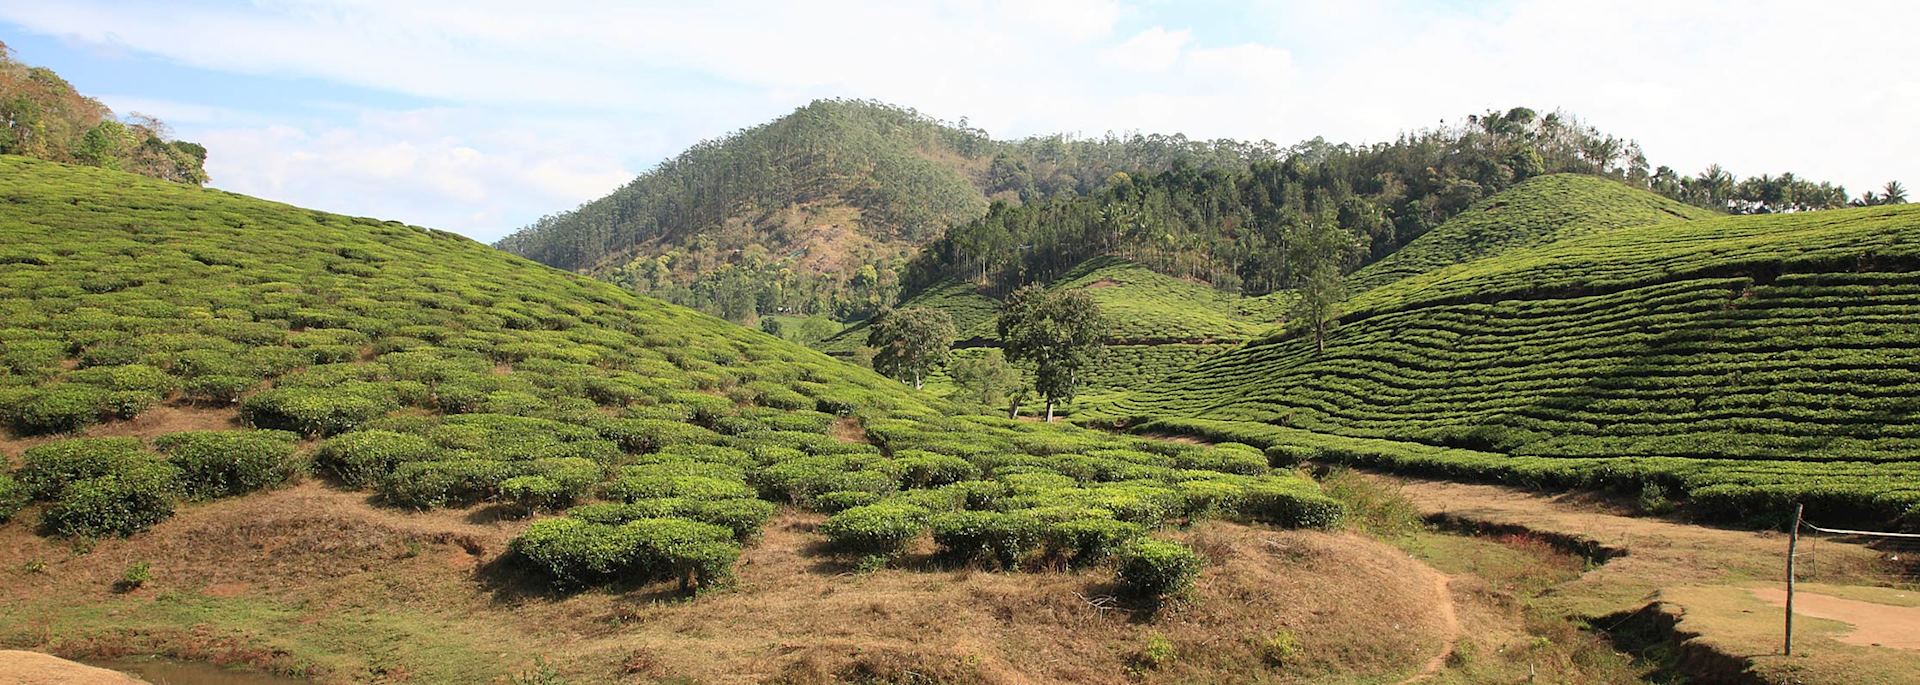 Tea plantation in Thekkady